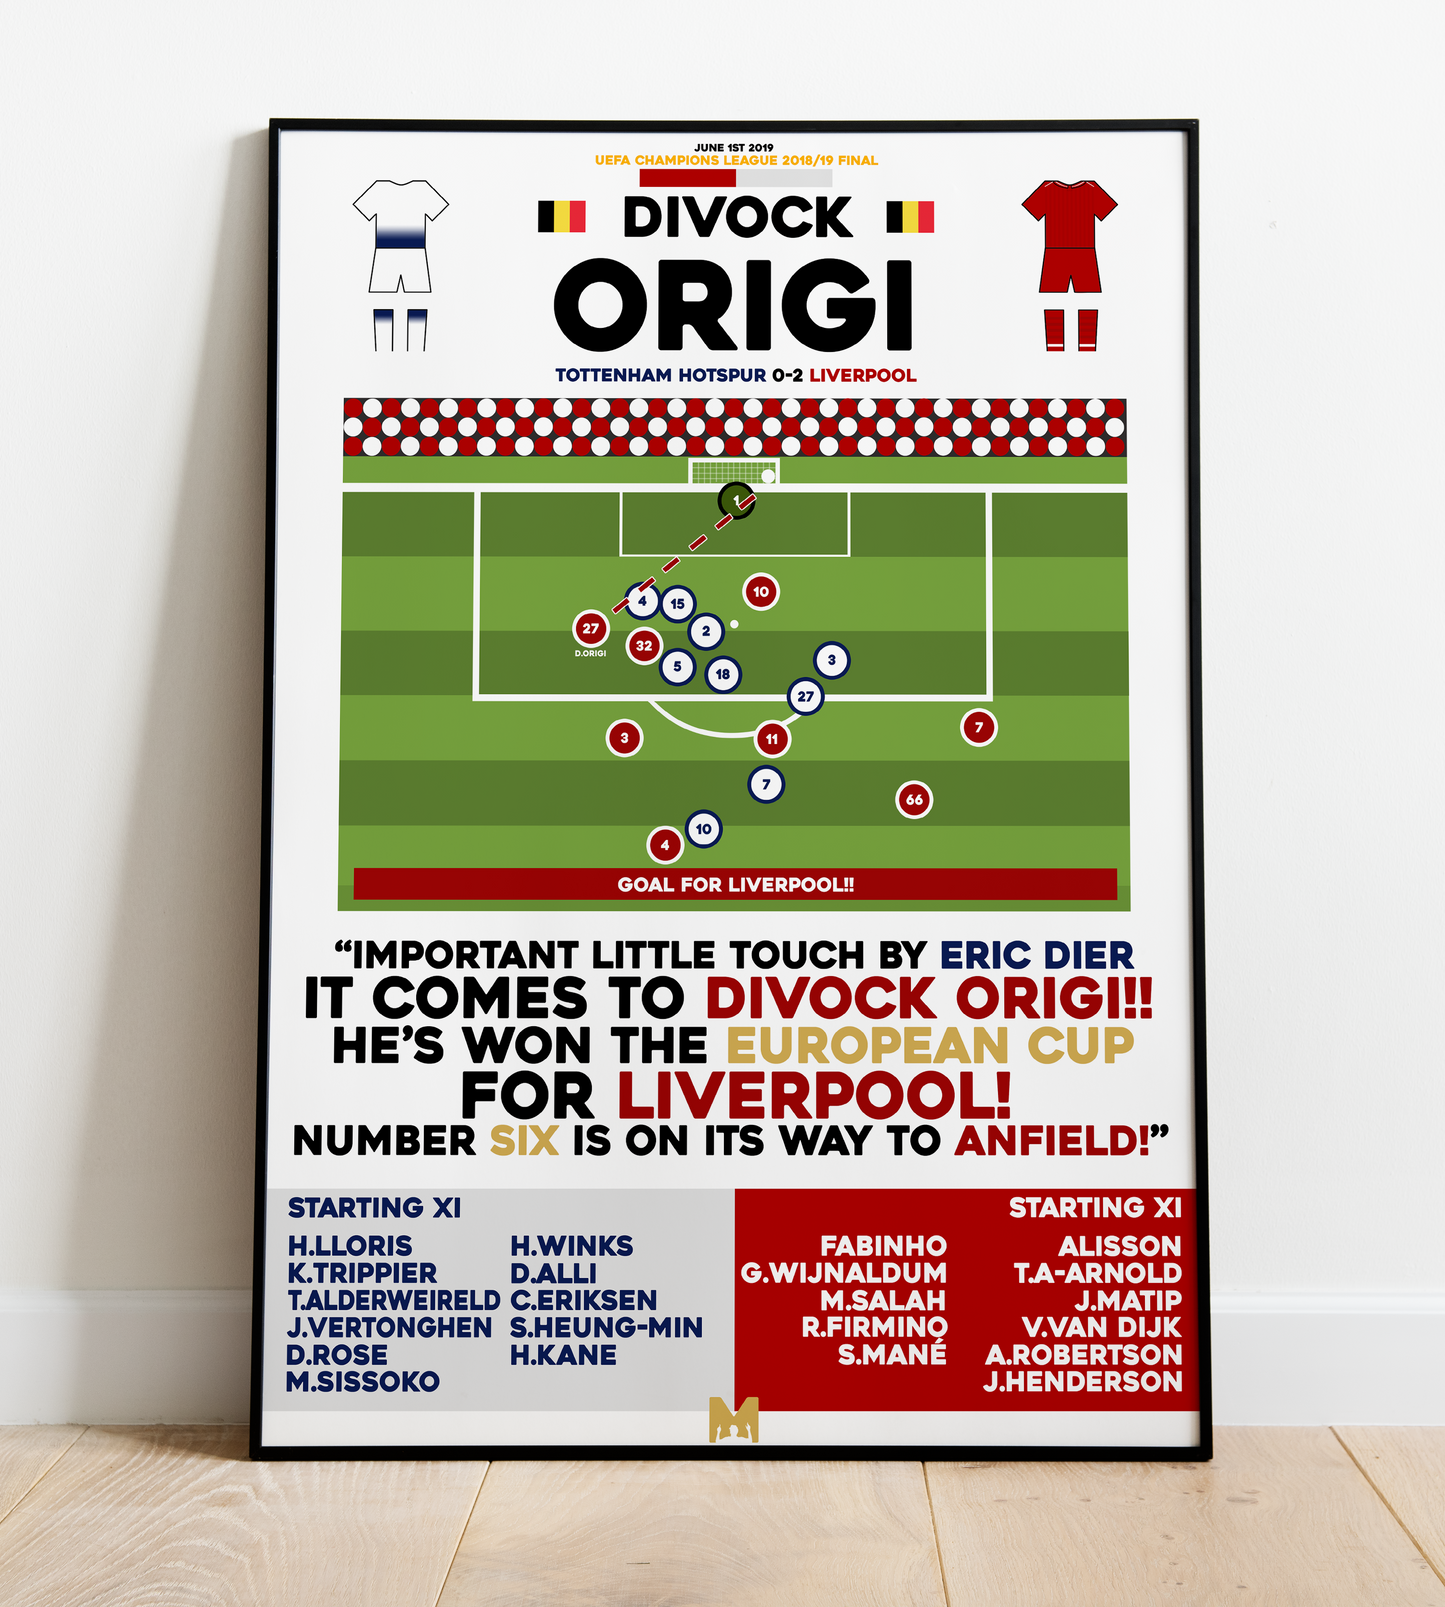 Divock Origi Goal vs Tottenham Hotspur - UEFA Champions League 2018/19 Final - Liverpool